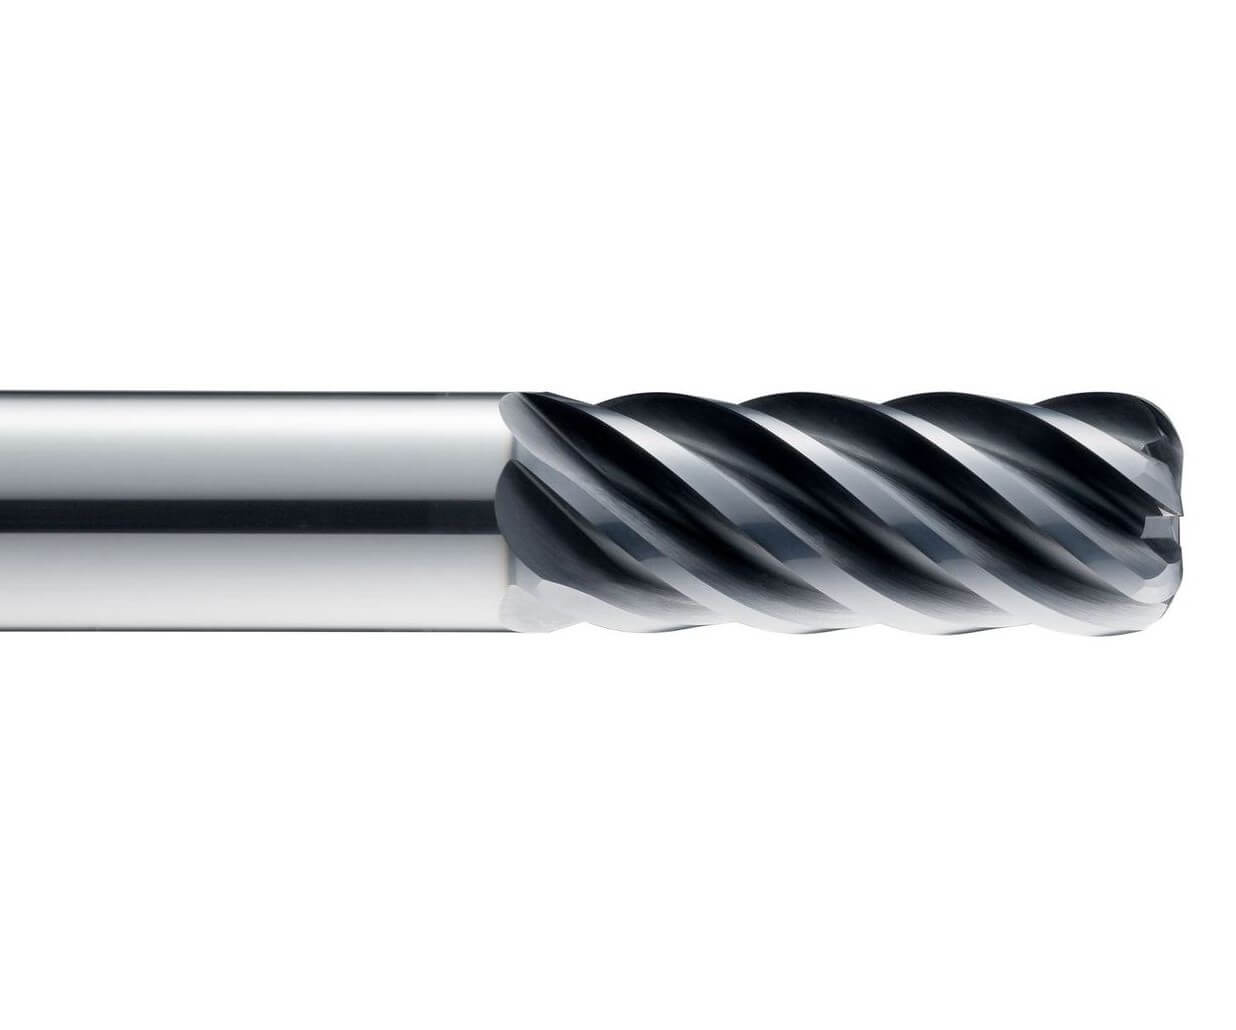 Kyocera SGS Precision Tools proširio je seriju Z-Carb HPR vrhunskih reznih alata za titan i nehrđajući čelik. 